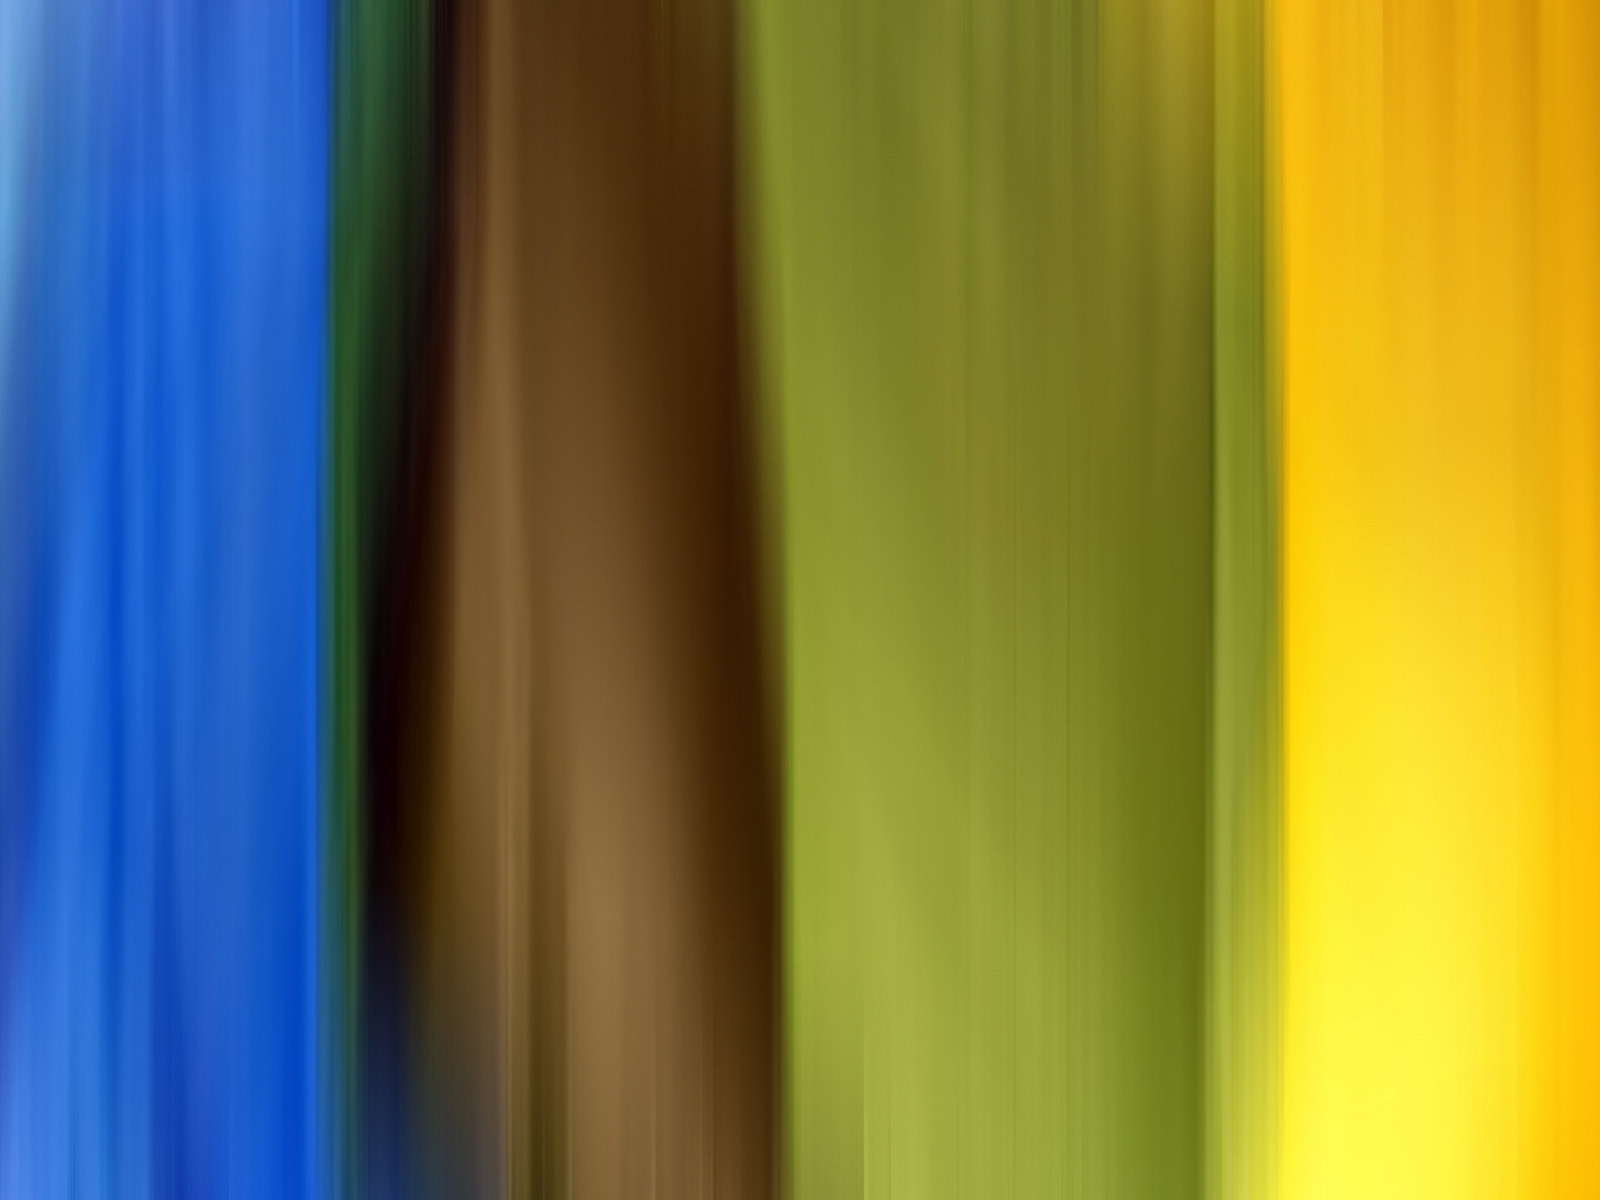 壁纸1600x1200 Abstact Colours 抽象色彩背景图片壁纸壁纸 抽象色彩视觉设计壁纸(第十二辑)壁纸 抽象色彩视觉设计壁纸(第十二辑)图片 抽象色彩视觉设计壁纸(第十二辑)素材 插画壁纸 插画图库 插画图片素材桌面壁纸